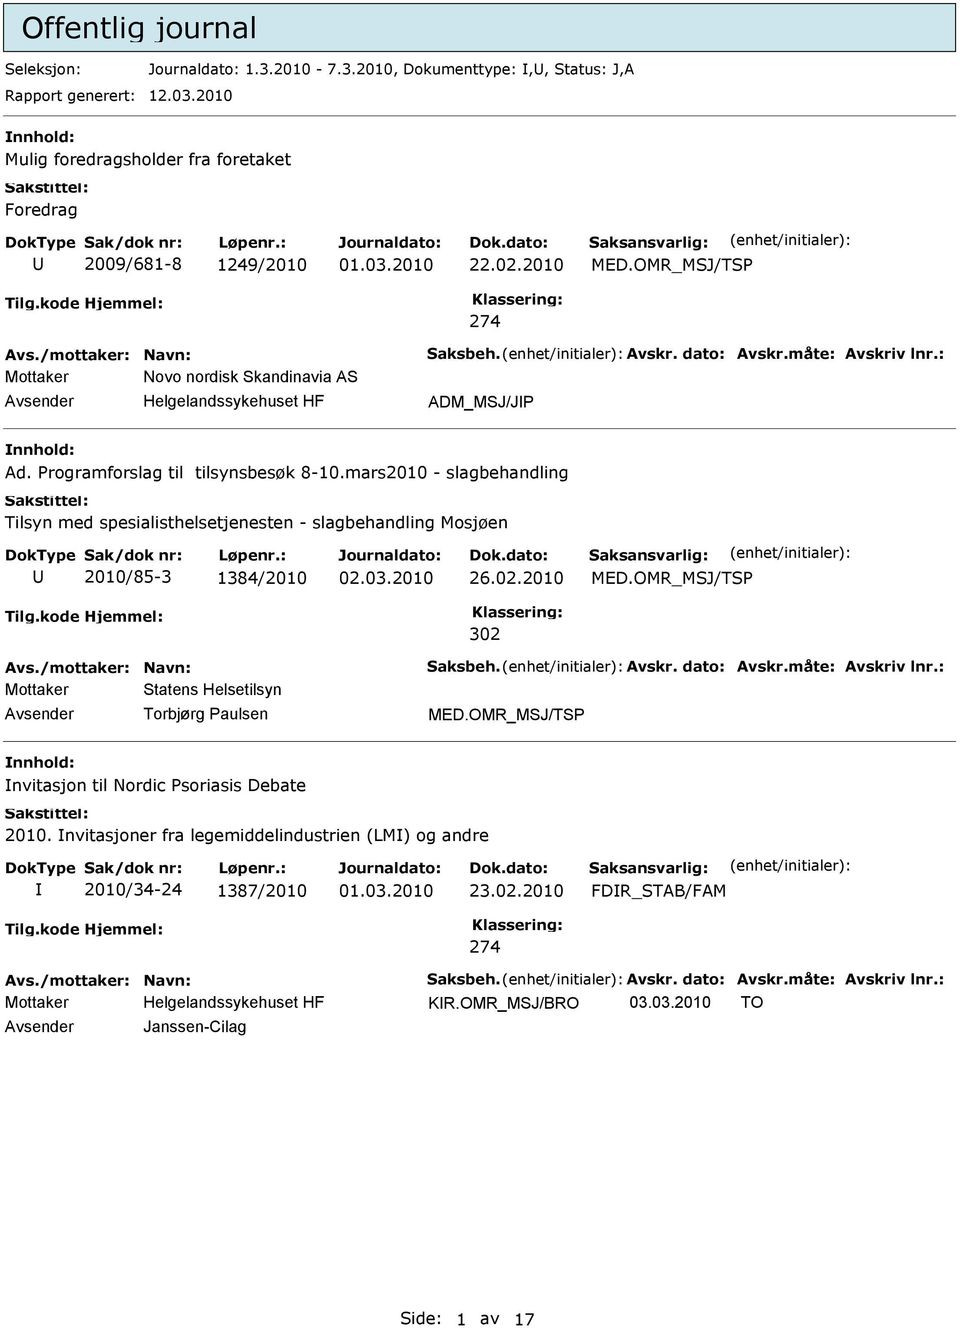 Programforslag til tilsynsbesøk 8-10.mars2010 - slagbehandling Tilsyn med spesialisthelsetjenesten - slagbehandling Mosjøen 2010/85-3 1384/2010 26.02.2010 MED.